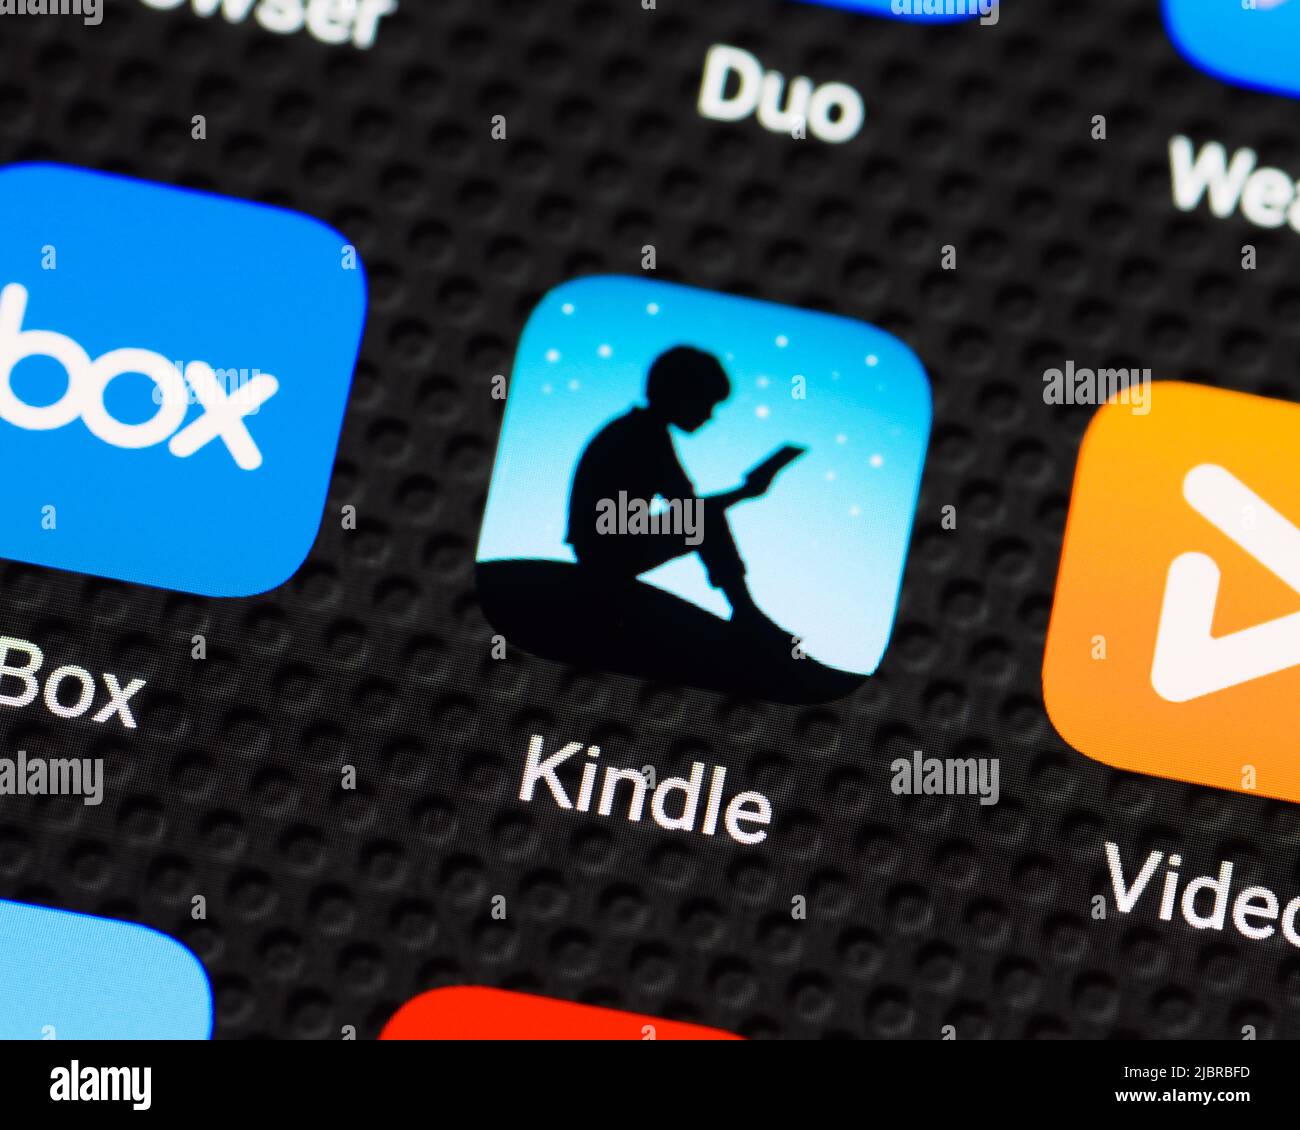 Icona dell'applicazione Kindle e-Reader su uno smartphone, primo piano Foto Stock